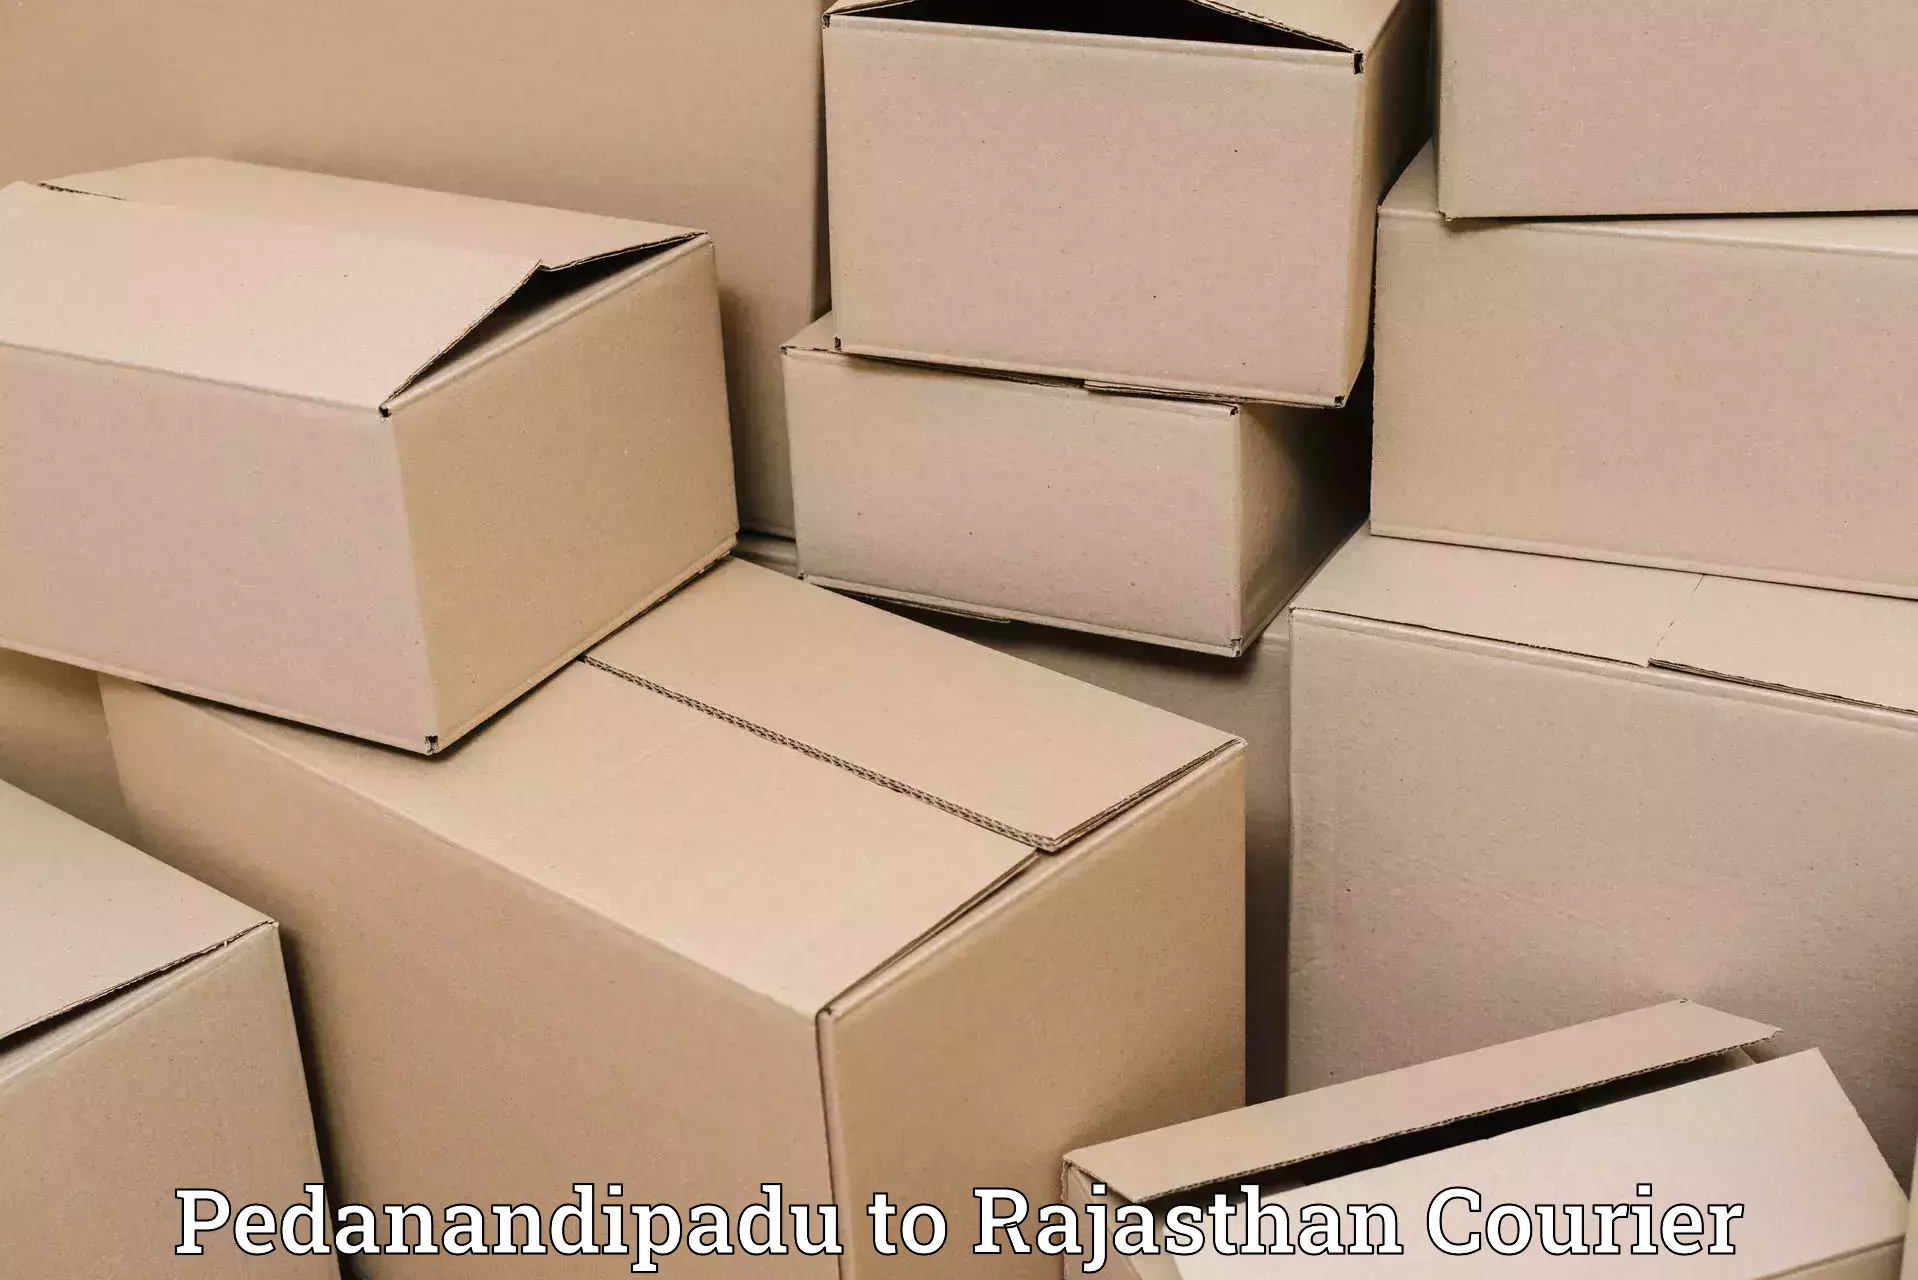 Efficient parcel service Pedanandipadu to Sardarshahr